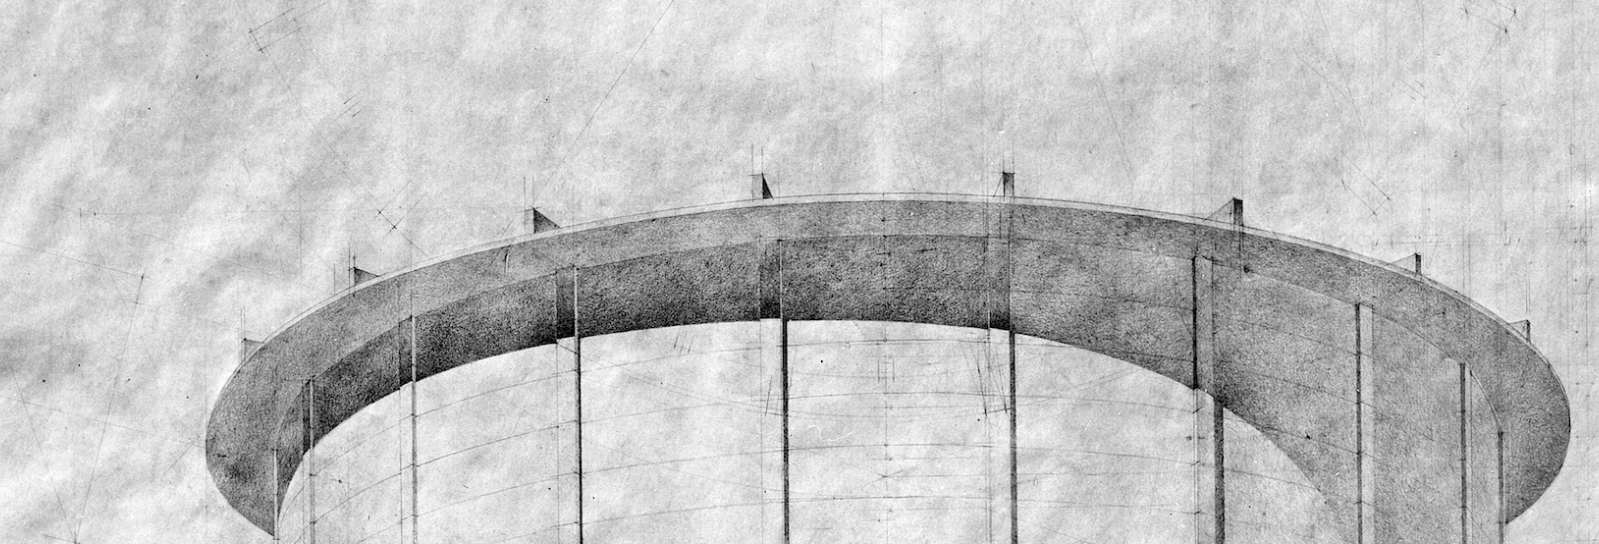 Blyanttegning af Vandtårnet tegnet af Ib Lunding